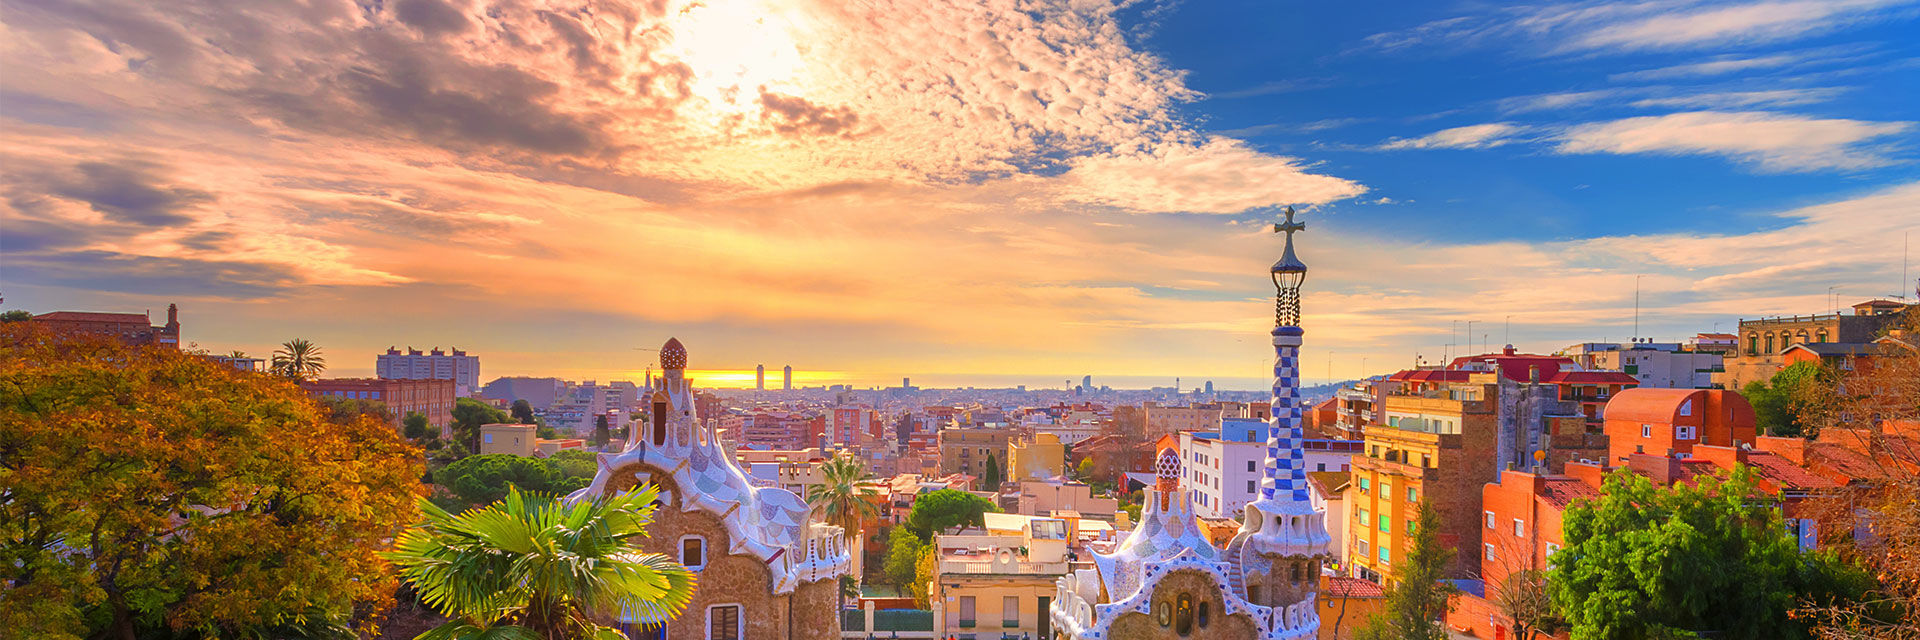 Barcelona - Descubre Sagrada Familia##Descubre La Pedrera##Descubre Las Ramblas